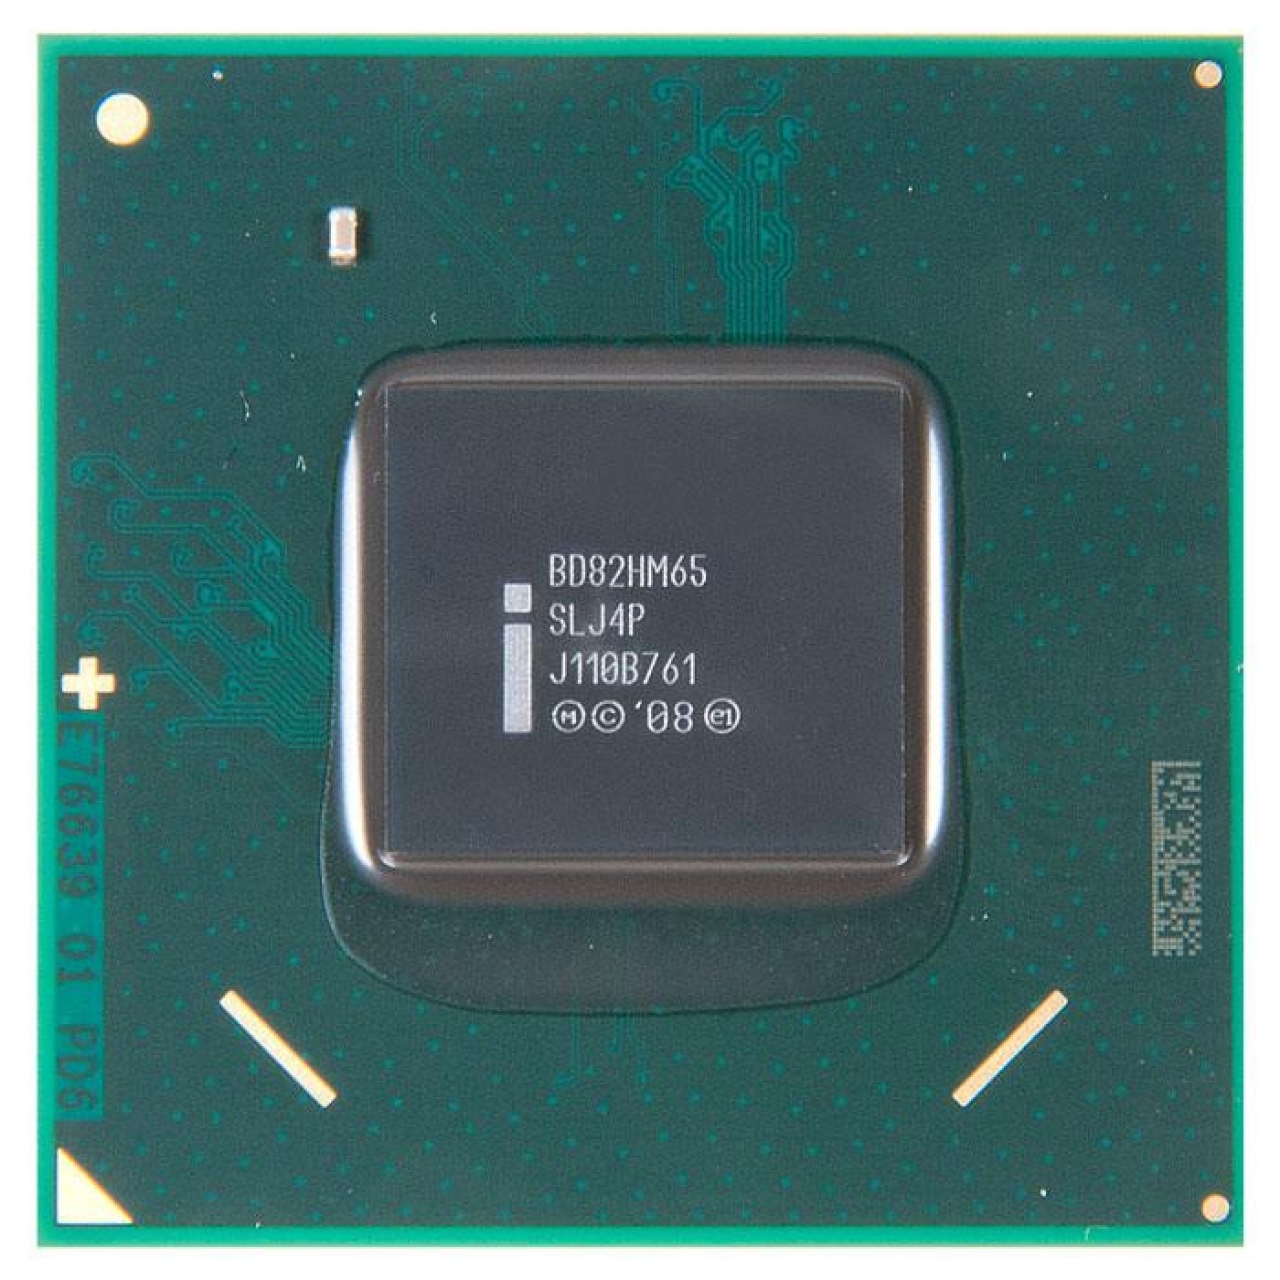   BD82HM65 Intel SLJ4P, REF